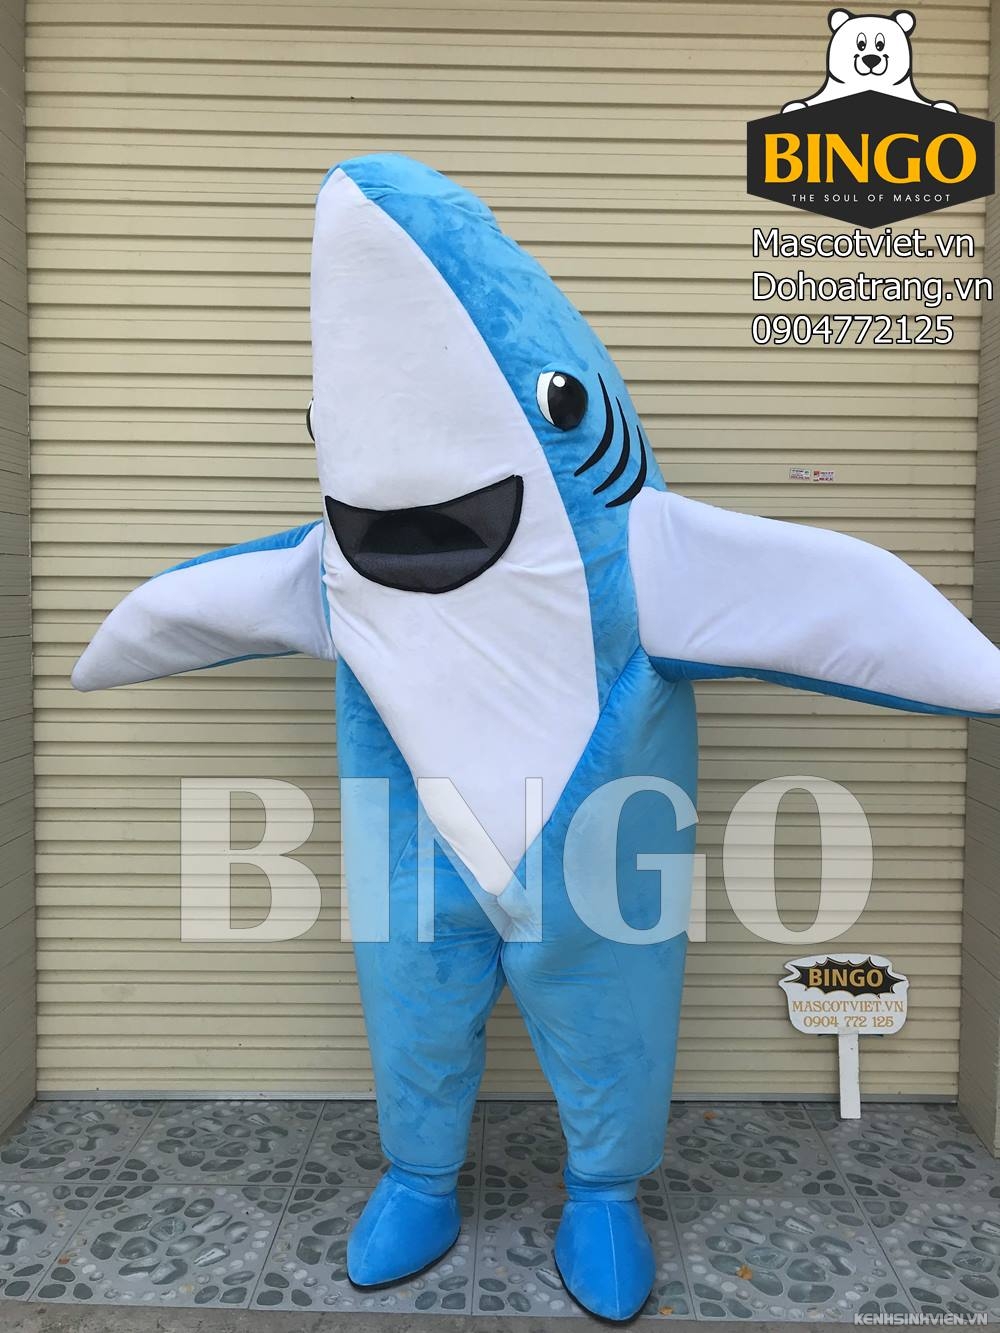 mascot-con-ca-map-bingo-costumes-0904772125.jpg